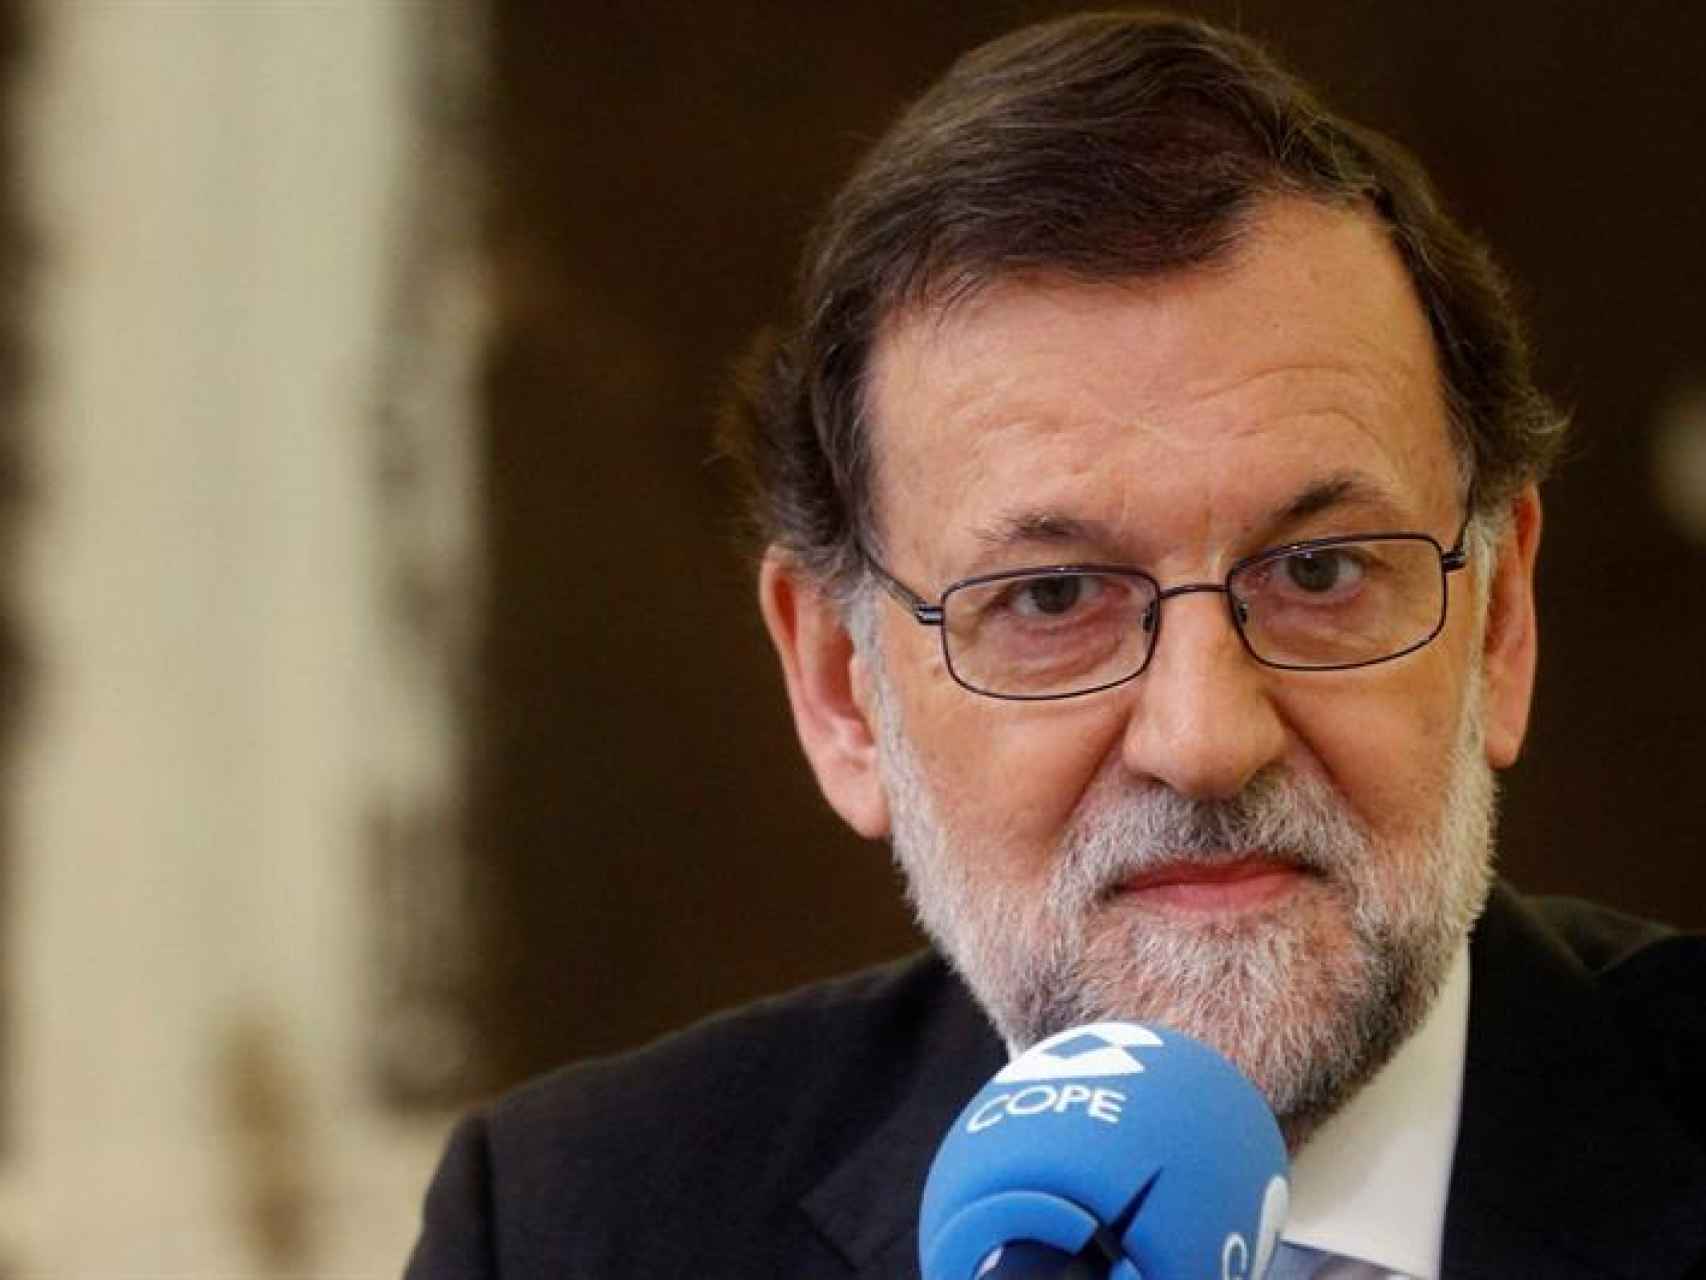 Entrevista de Mariano Rajoy en la Cope/Jose María Cuadrado Jiménez/EFE